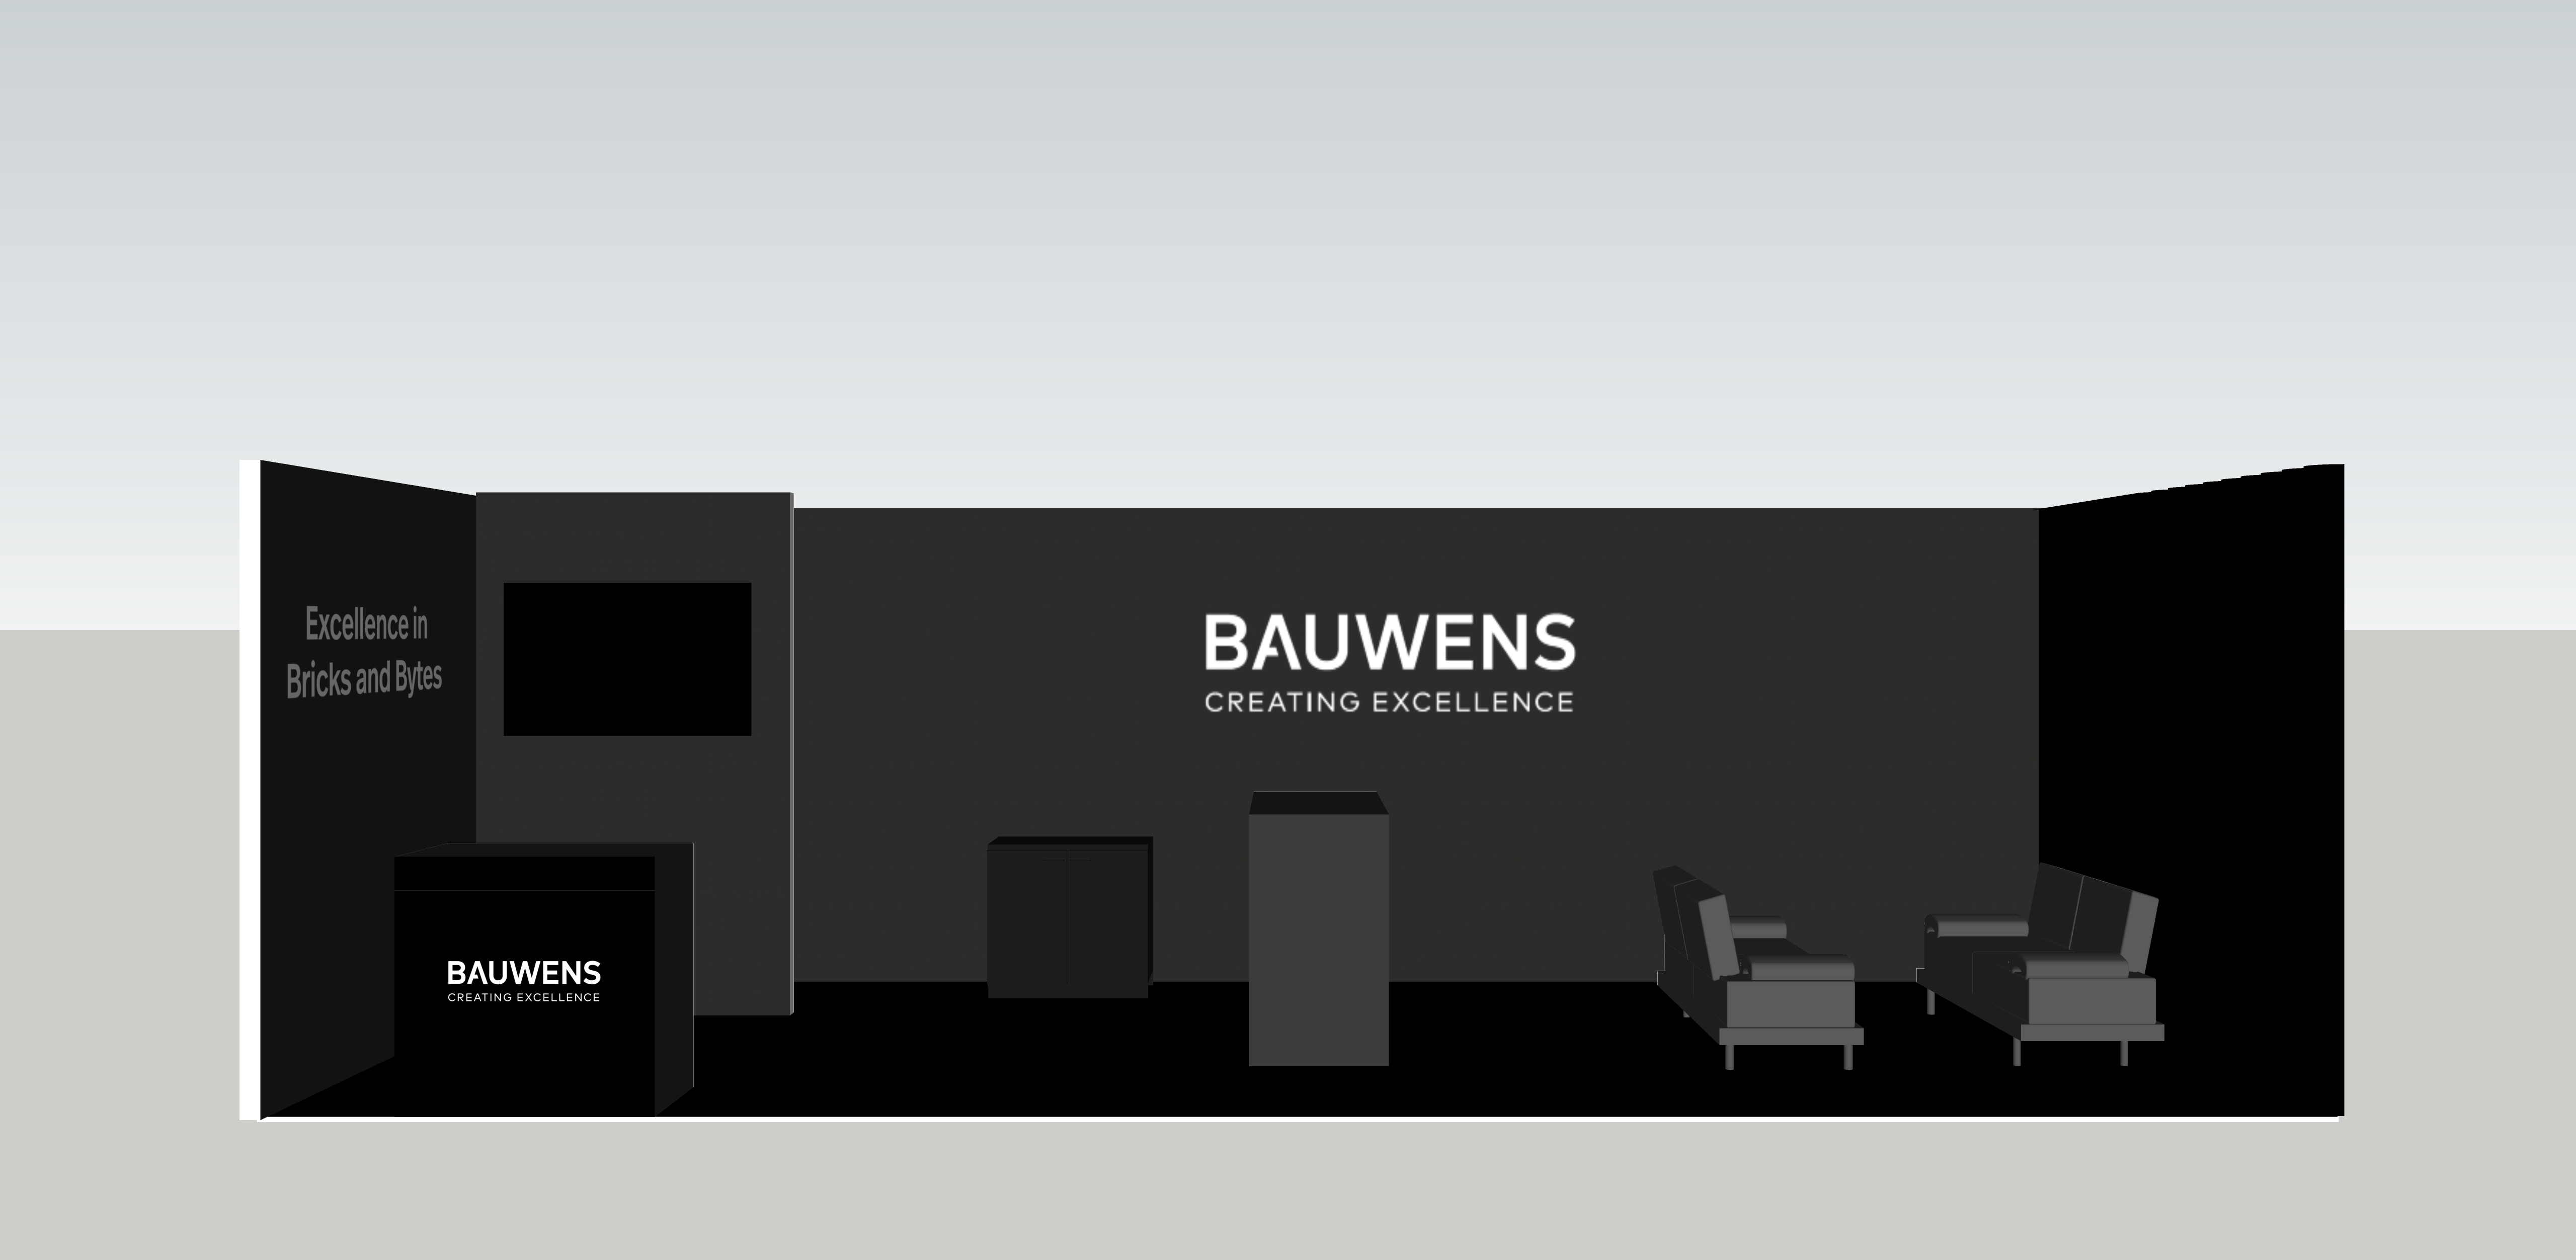 Stand der Bauwens GmbH & Co. KG